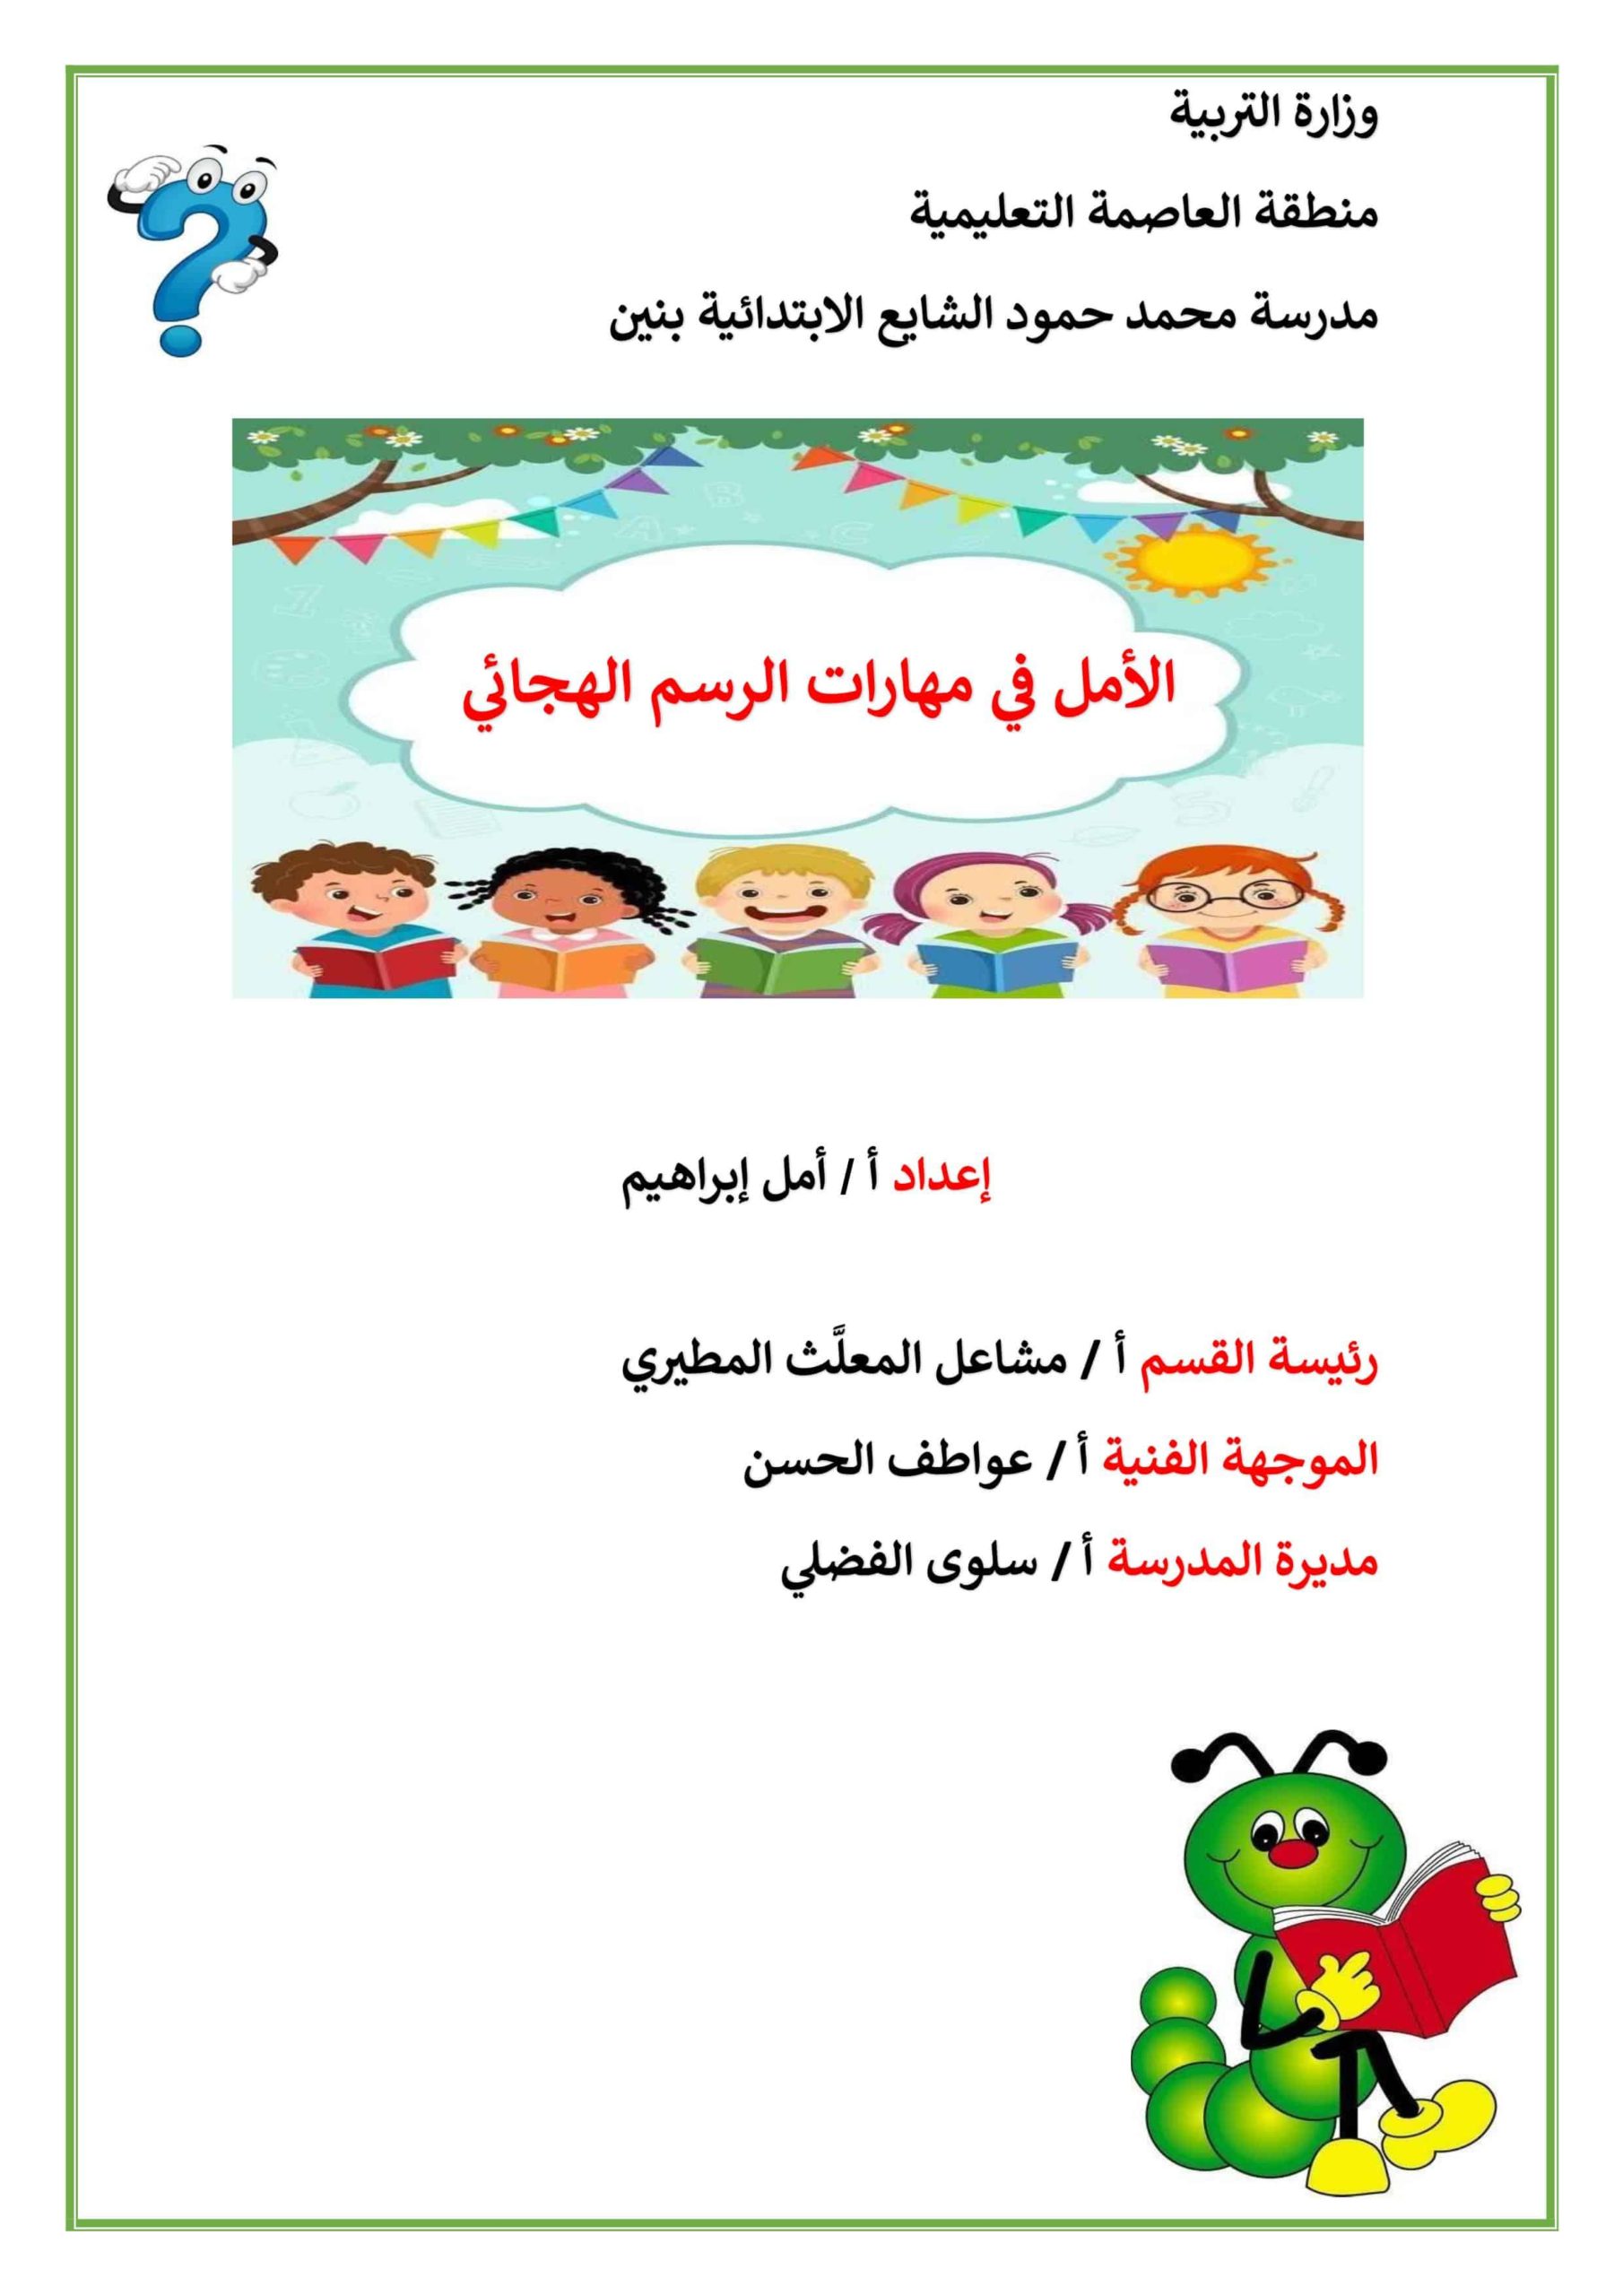 مذكرة الأمل في مهارات الرسم الهجائي اللغة العربية الصف الأول